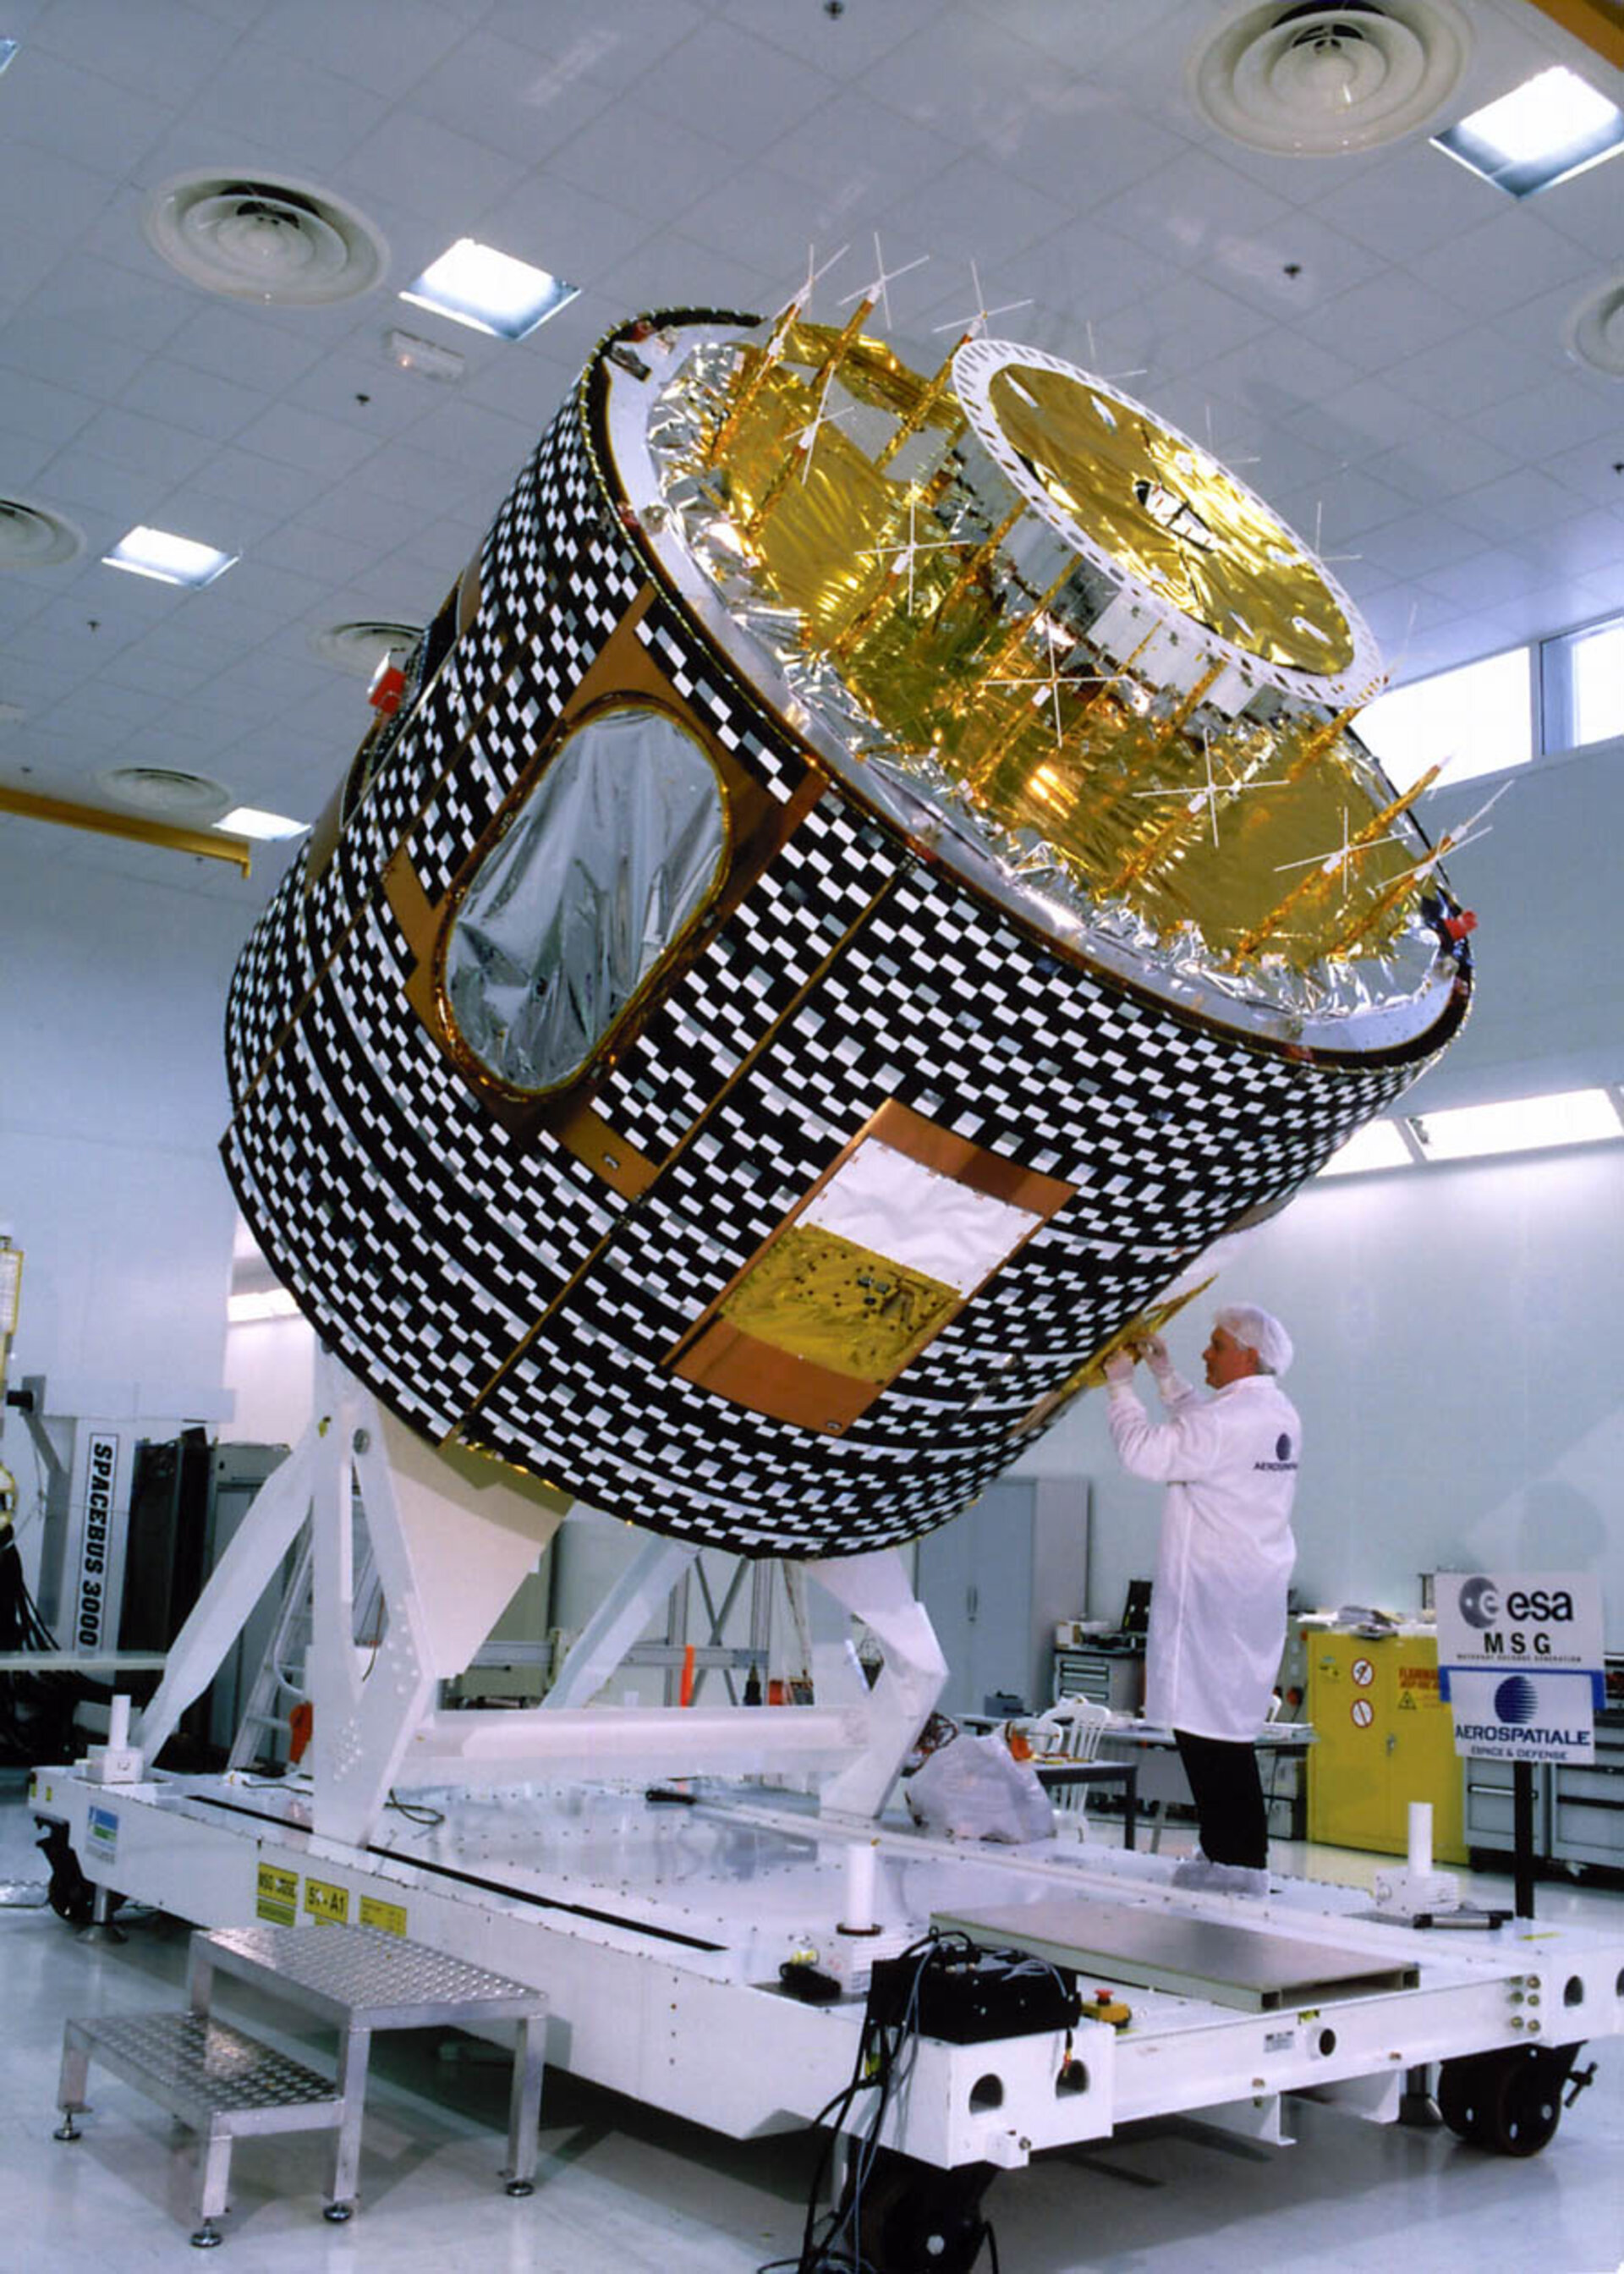 The MSG-1 satellite